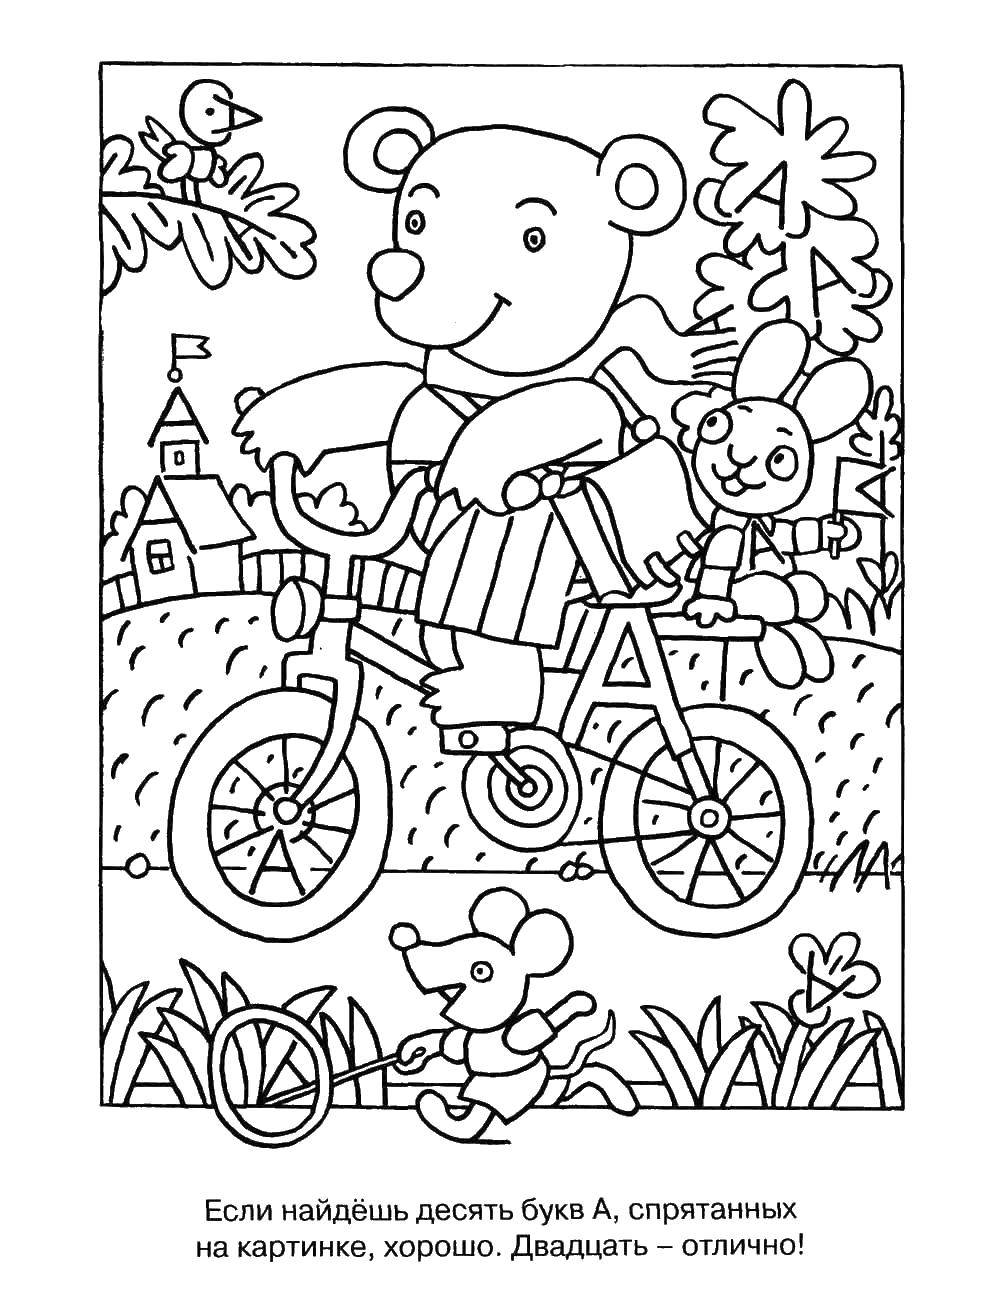 Опис: розмальовки  Ведмедик на велосипеді. Категорія: розмальовки знайди букву. Теги:  мишко, велосипед, літери, зайчик.